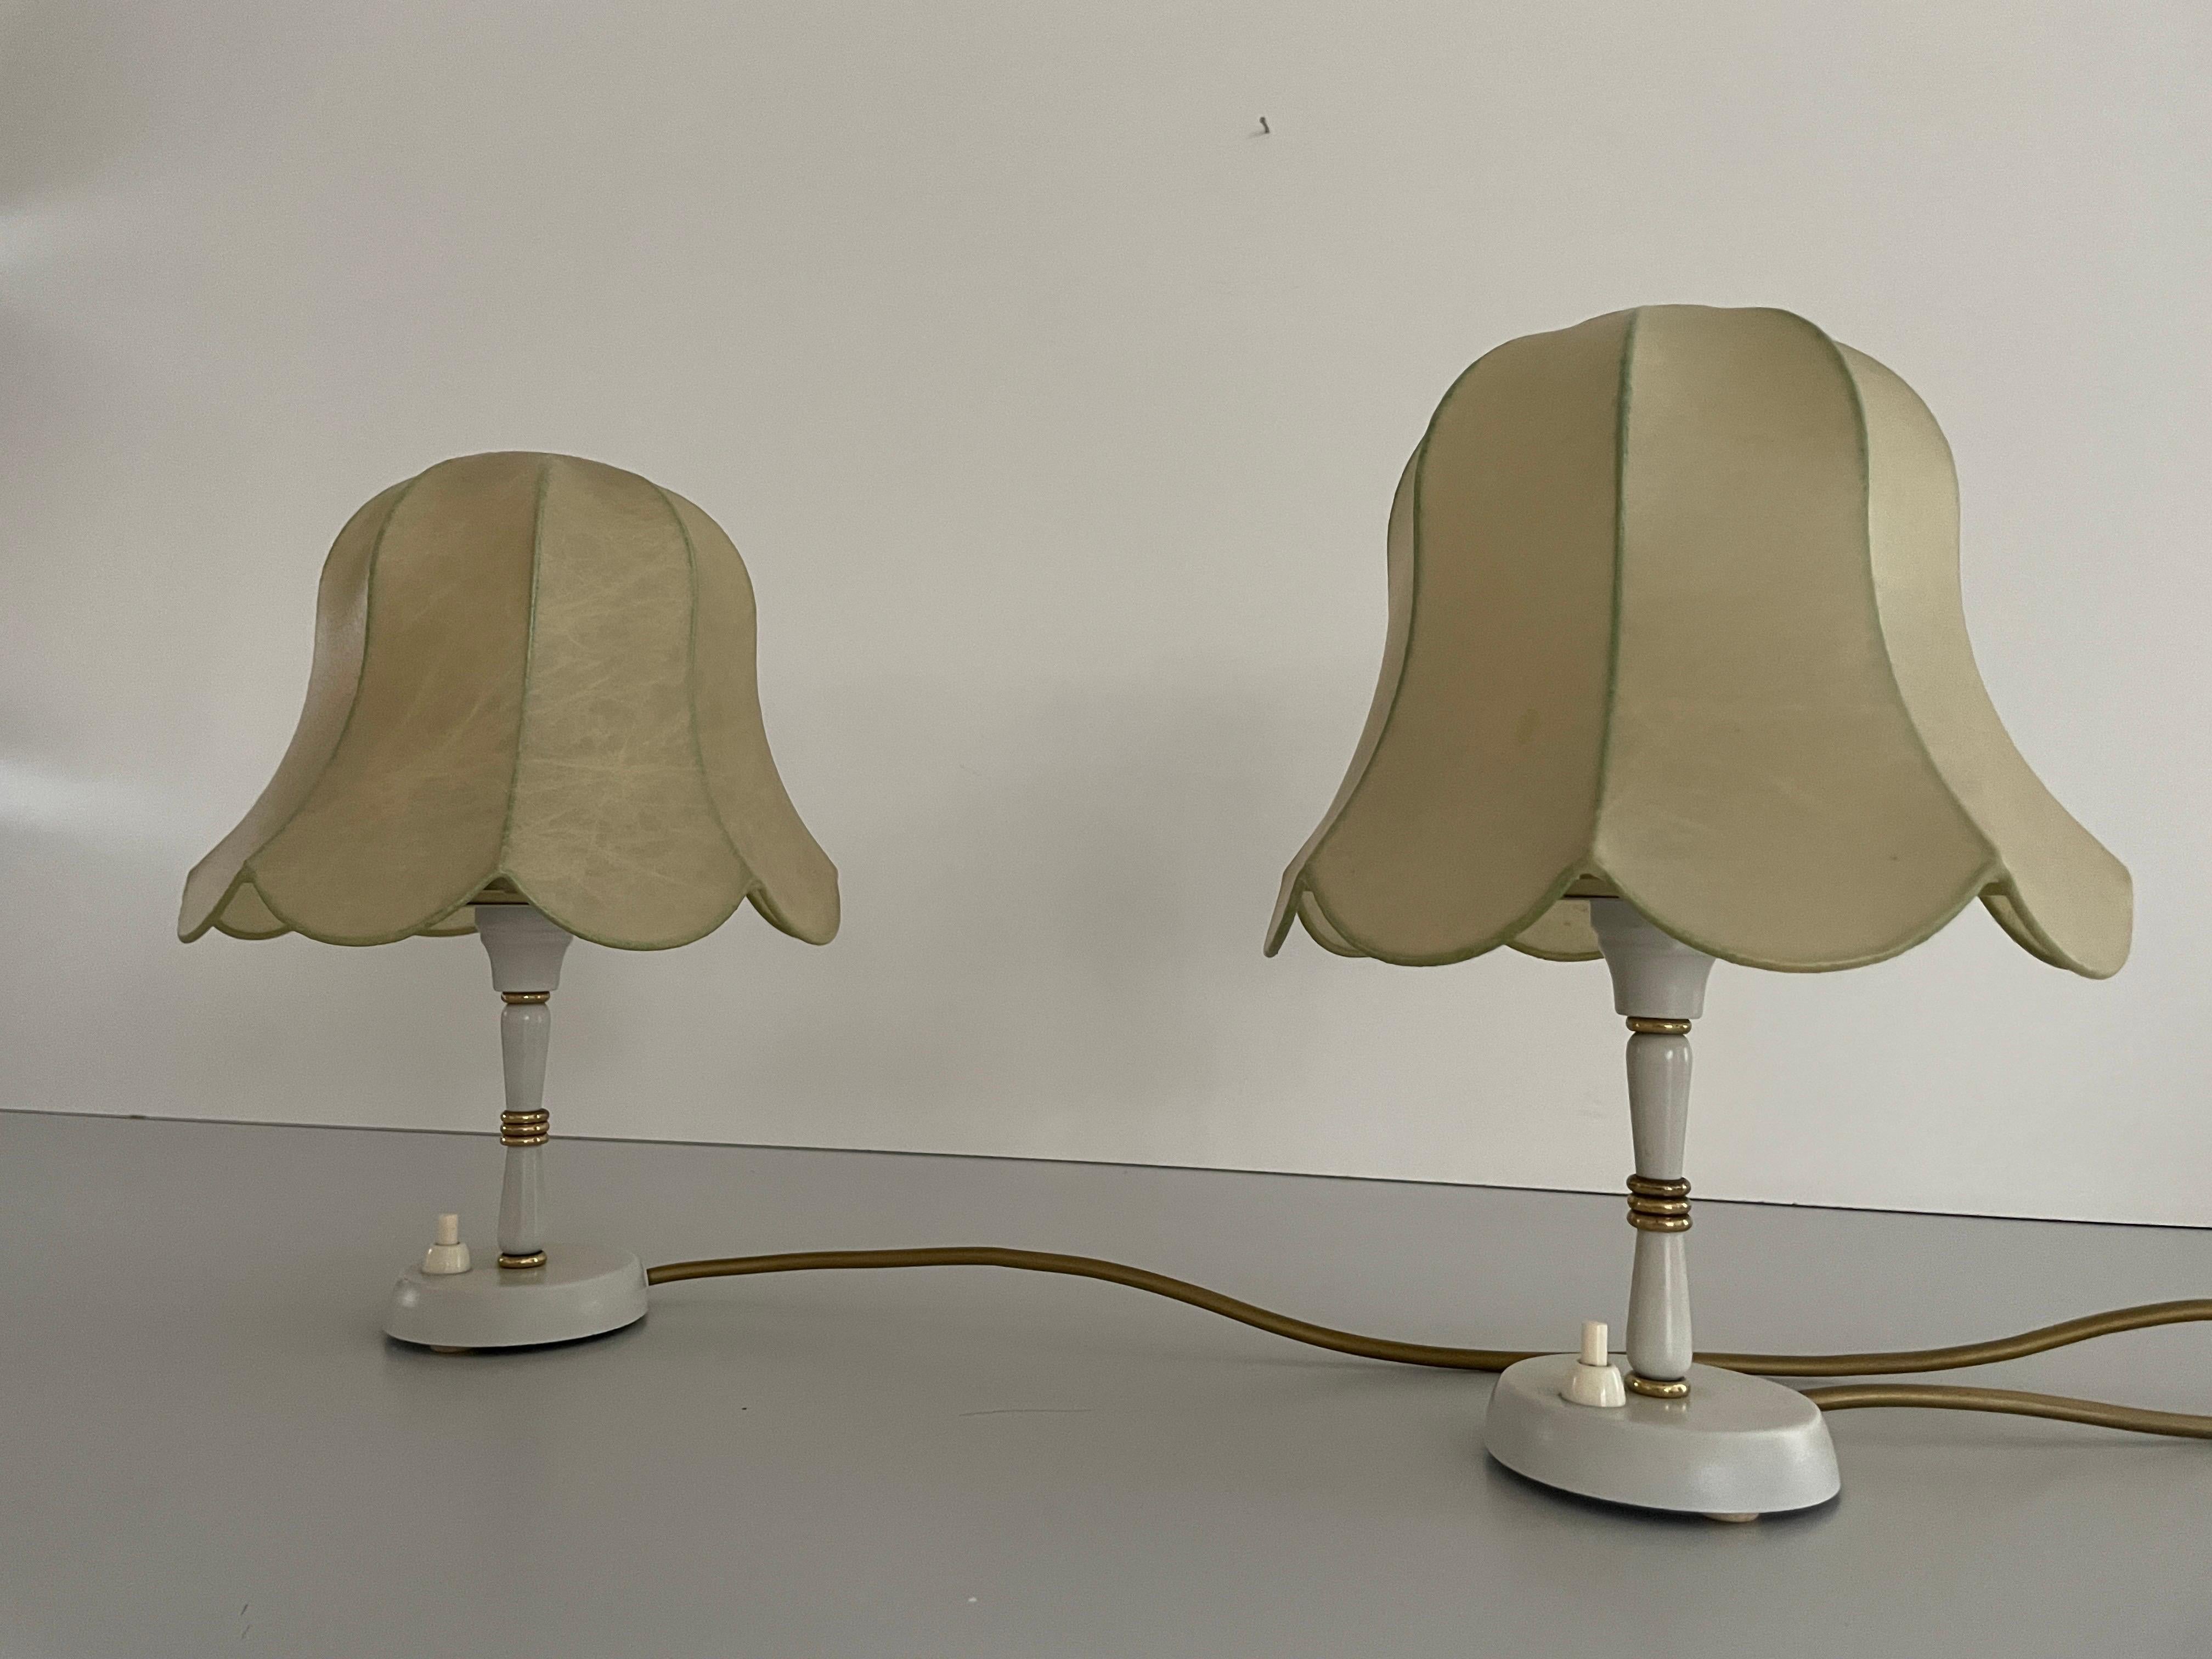 Paire de lampes de chevet à abat-jour cocon en métal par GOLDkanT, 1970, Allemagne
 
Abat-jour en cocon et corps en métal

Design/One minimal et naturel
Très haute qualité.
Entièrement fonctionnel.
Câble et prise d'origine. Ces lampes conviennent